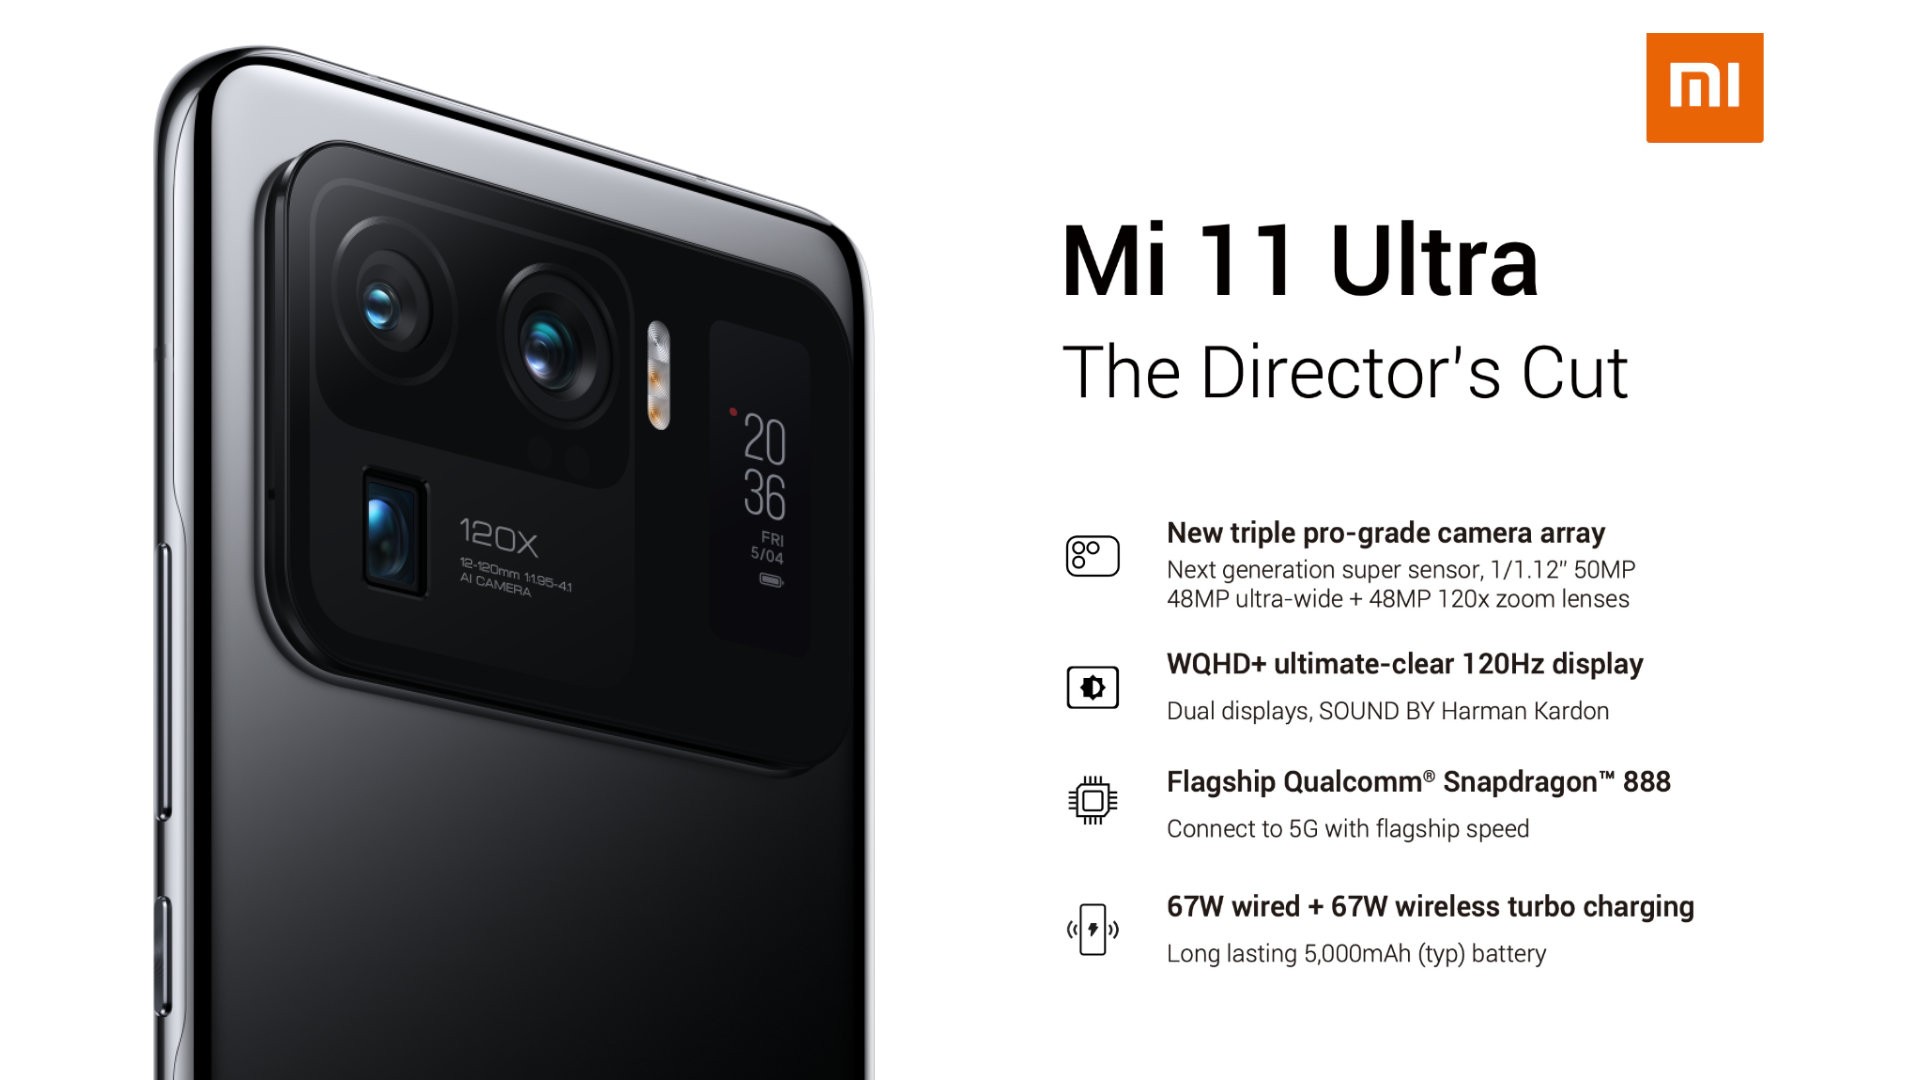 Xiaomi Mi 11 Ultra Price In Uae